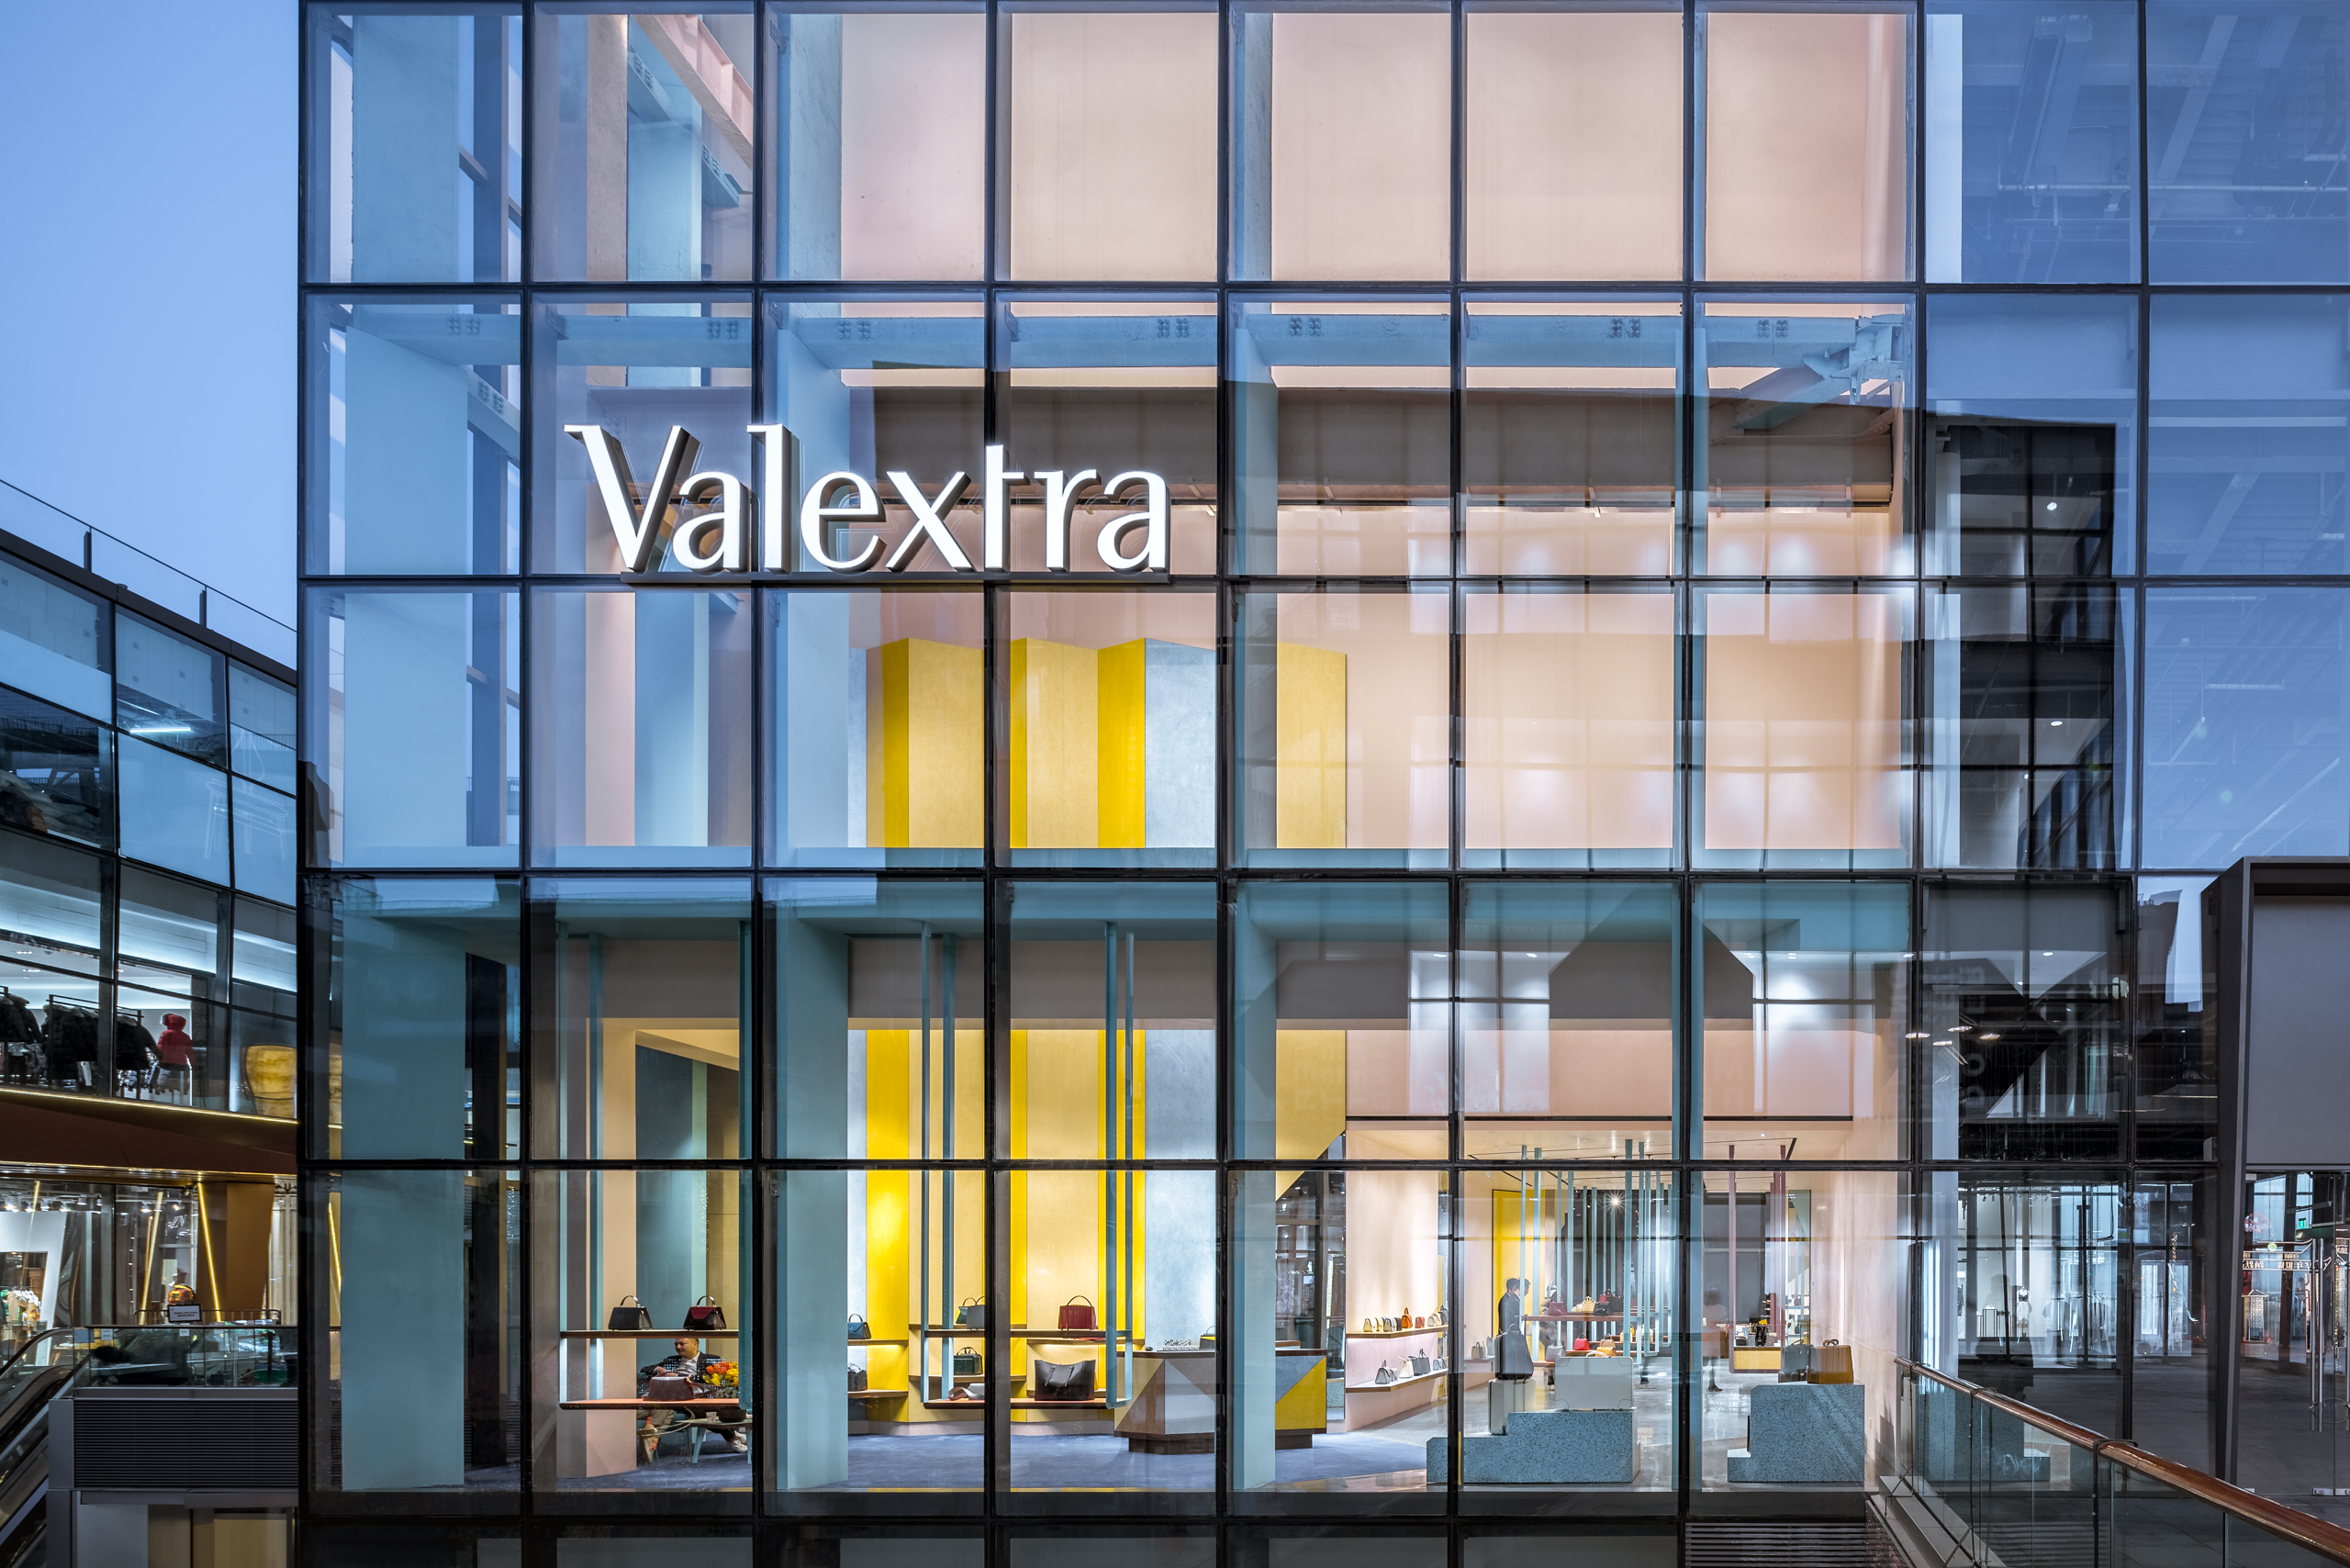 奢侈品不能偷工减料！我们要打造一个永留于世的品牌丨《华丽志》独家专访意大利顶级皮具品牌 Valextra 全球CEO